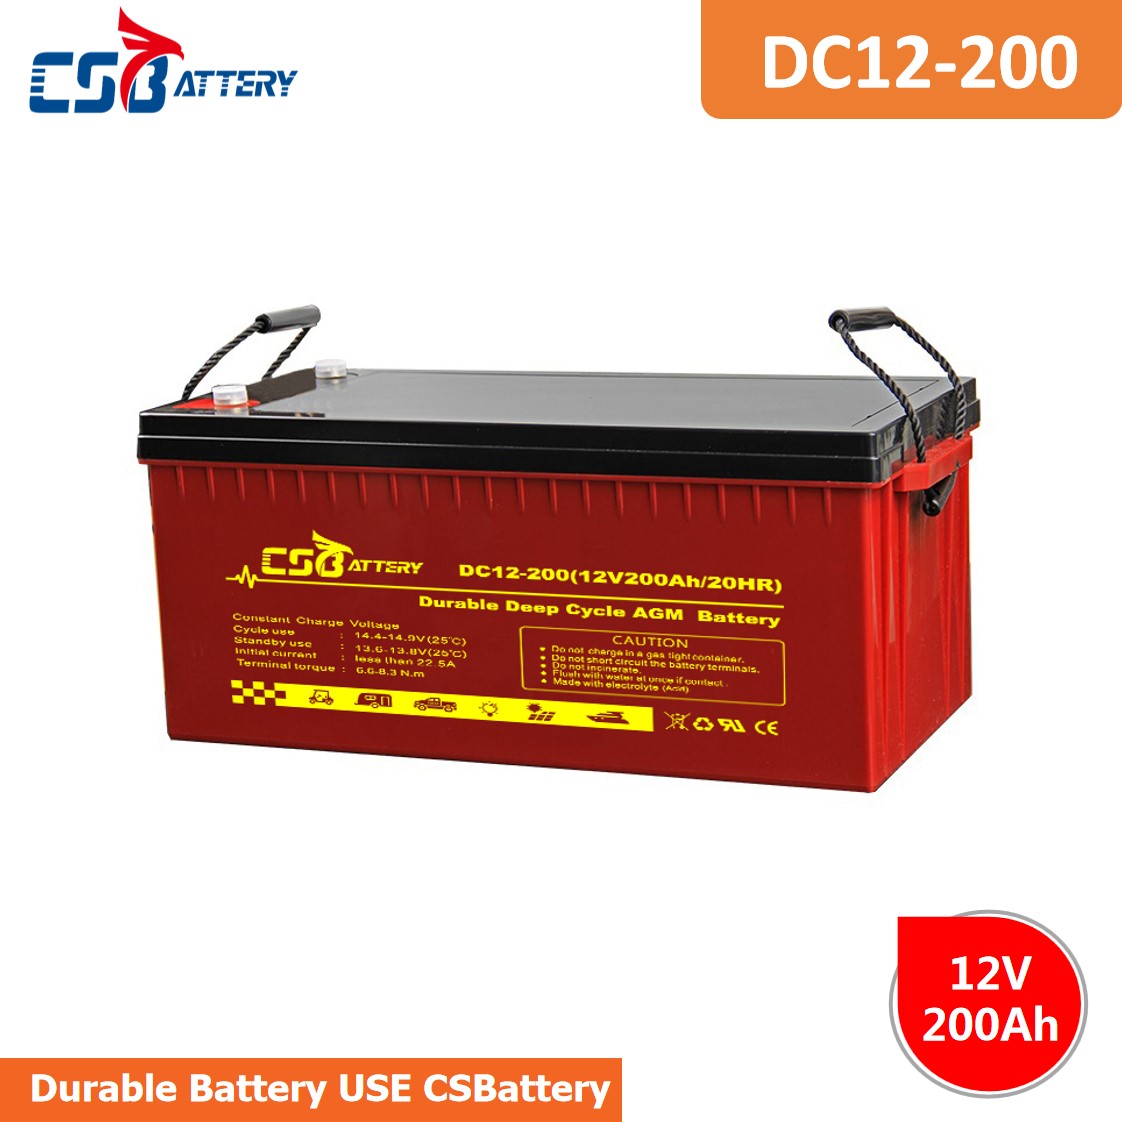 DC12-200 12V 200Ah Deep Cycle AGM Battery